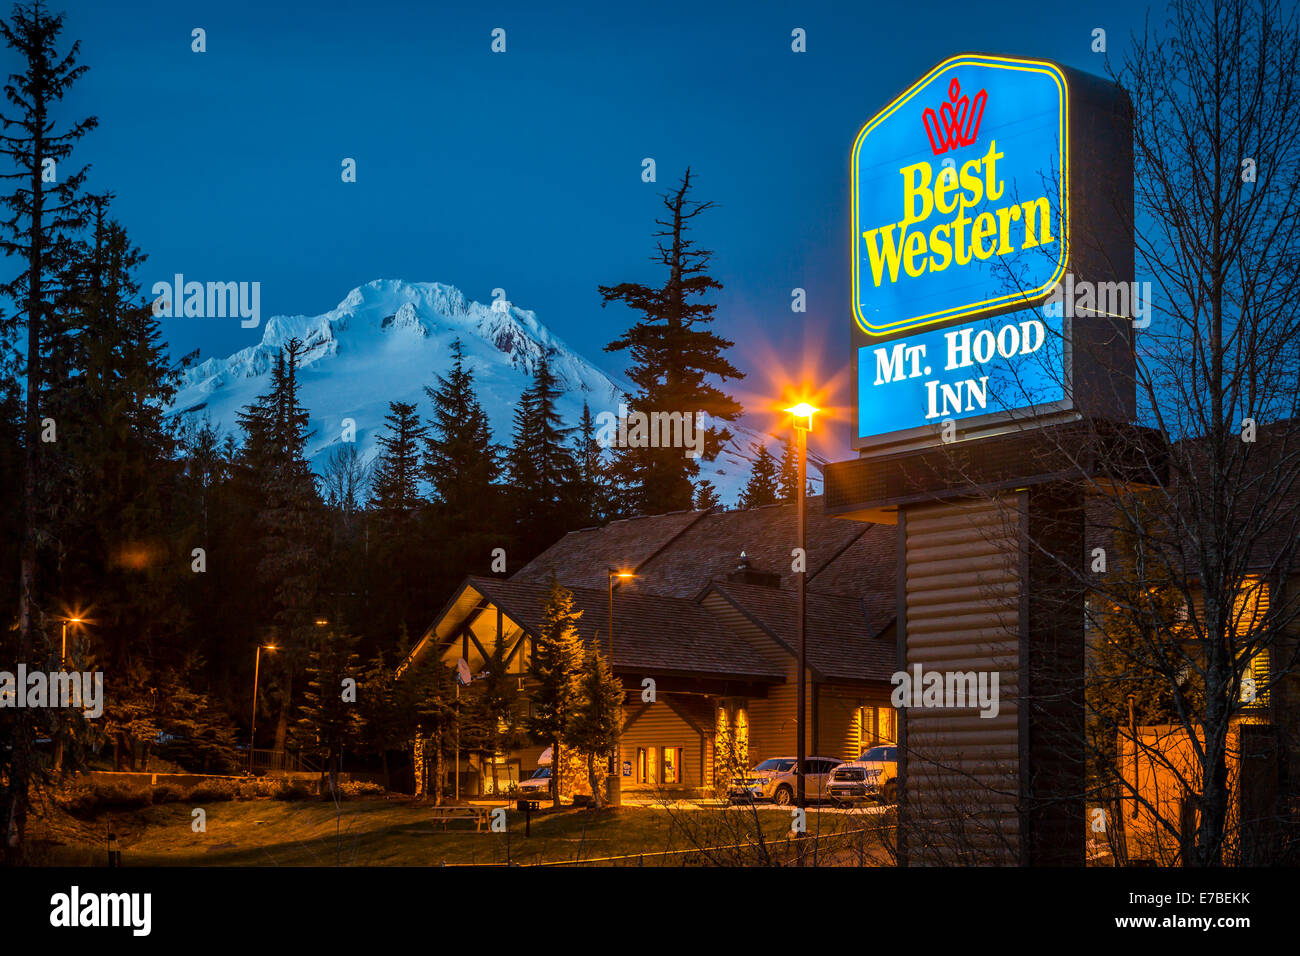 Il Best Western Hotel vicino a Mt. Il cofano illuminata di notte a Governo Camp, Oregon, Stati Uniti d'America. Foto Stock